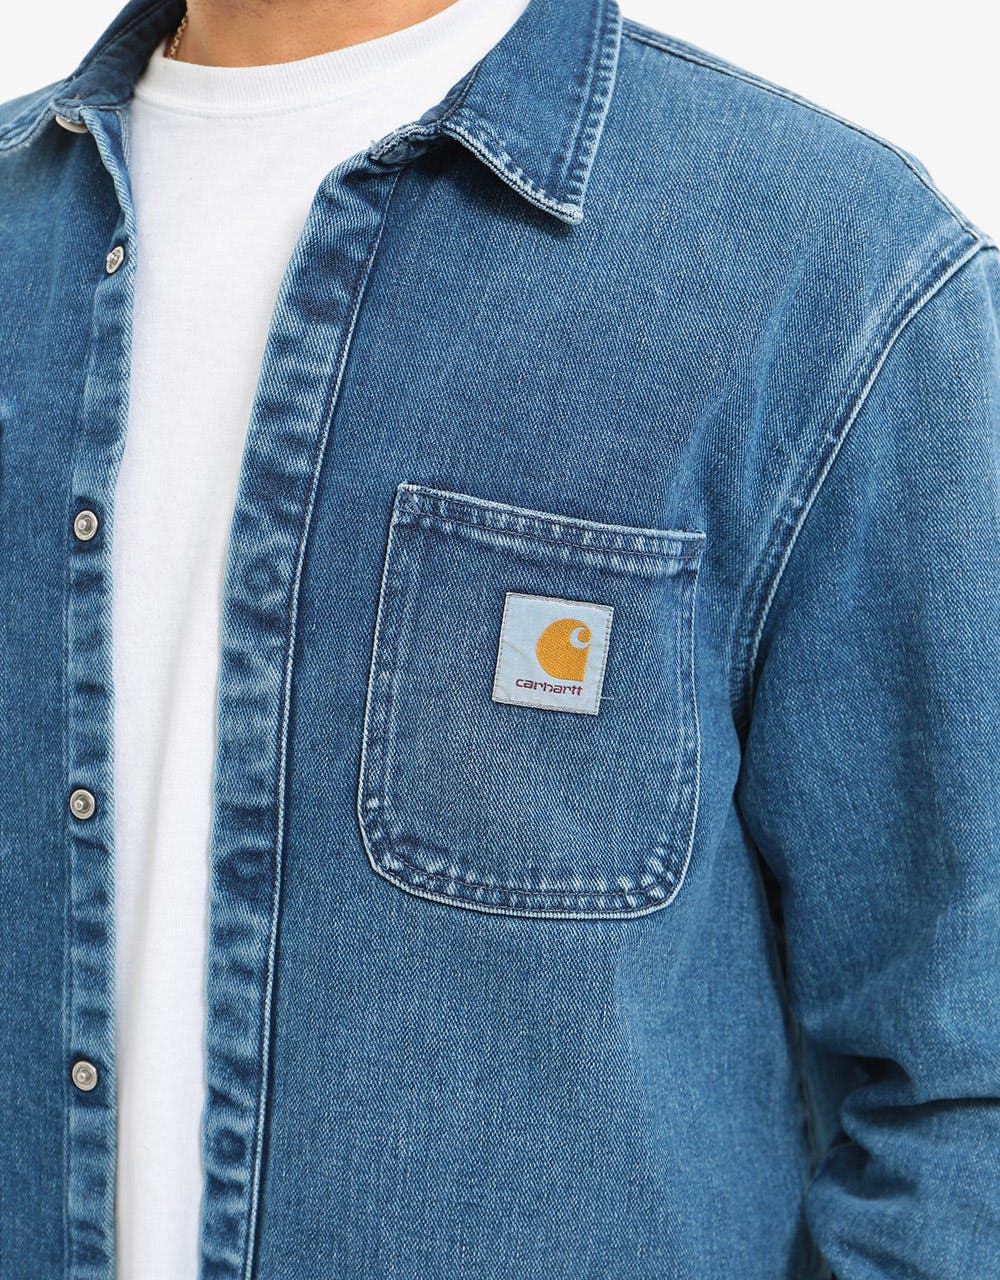 Carhartt WIP Salinac Shirt Jacket - Blue Mid Worn Wash